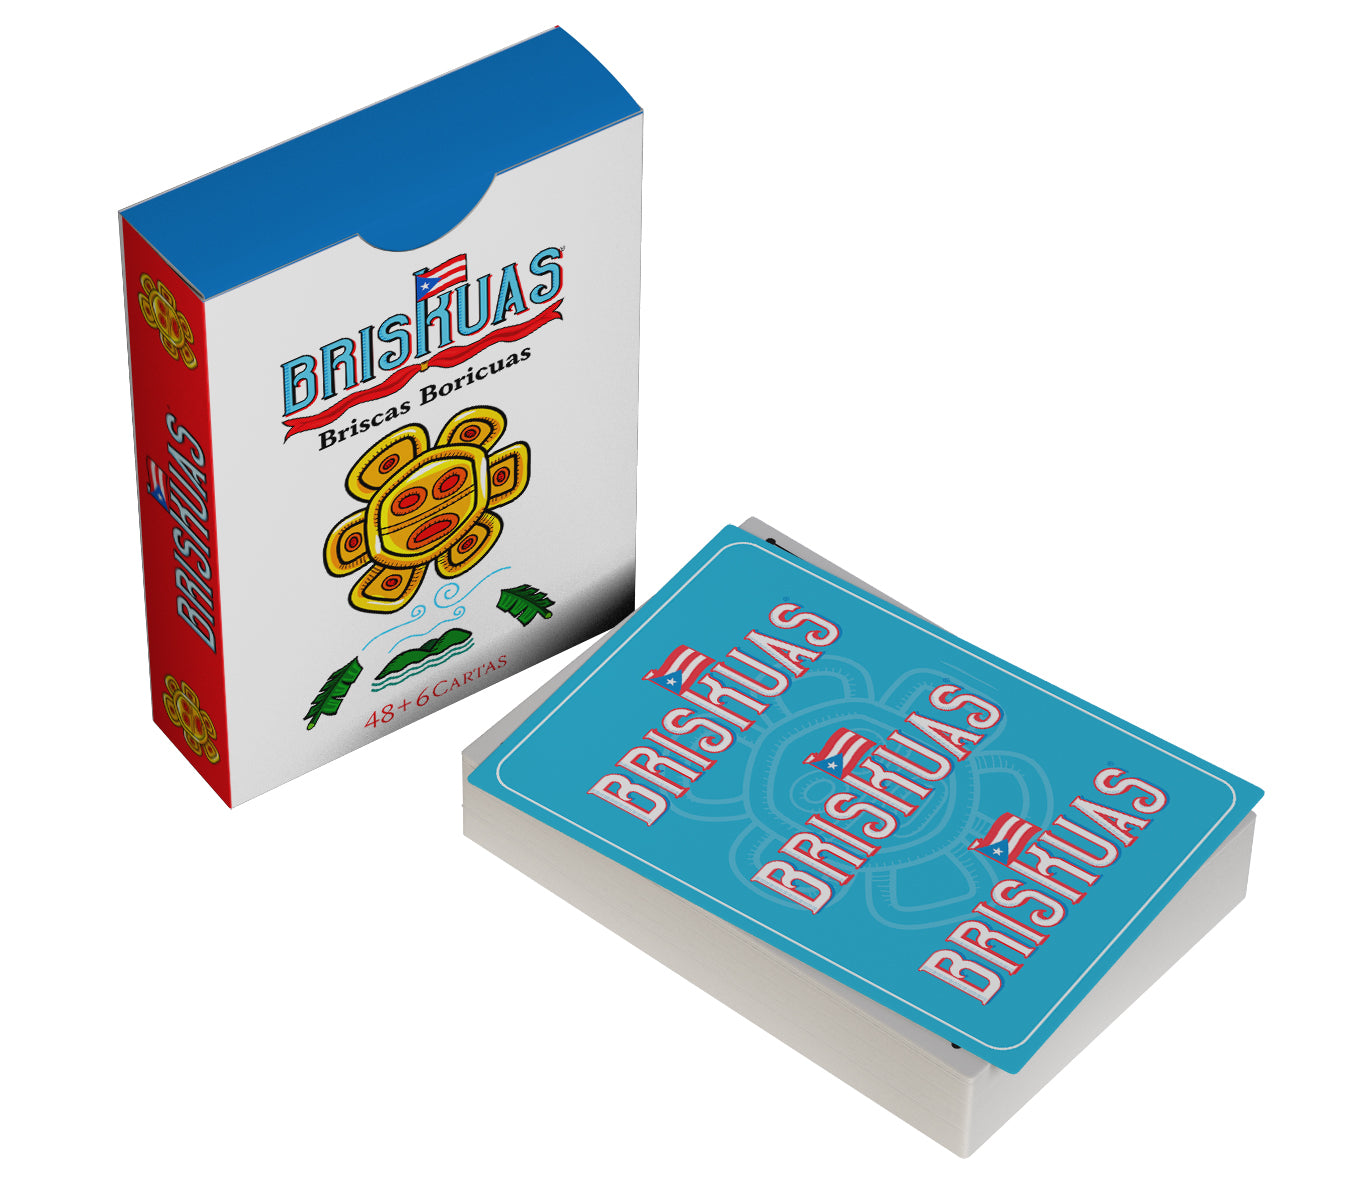 SET DE 48 CARTAS BRISKUAS: Briscas Boricuas 🇵🇷